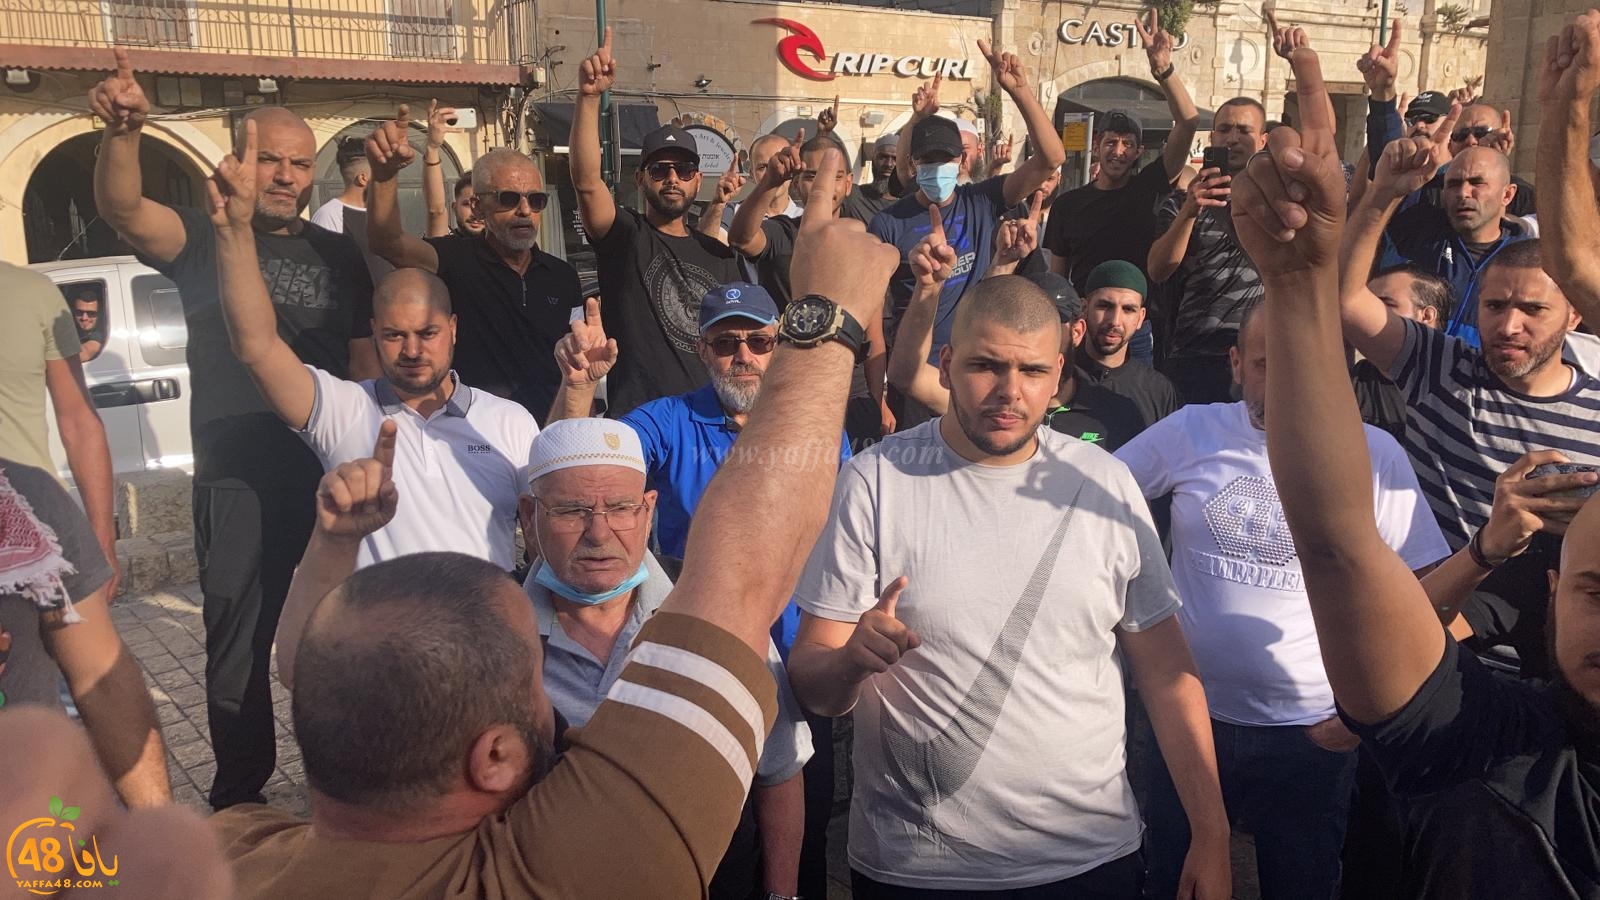  فيديو: وقفة احتجاجية في دوار الساعة بيافا نُصرةً للأقصى المبارك 